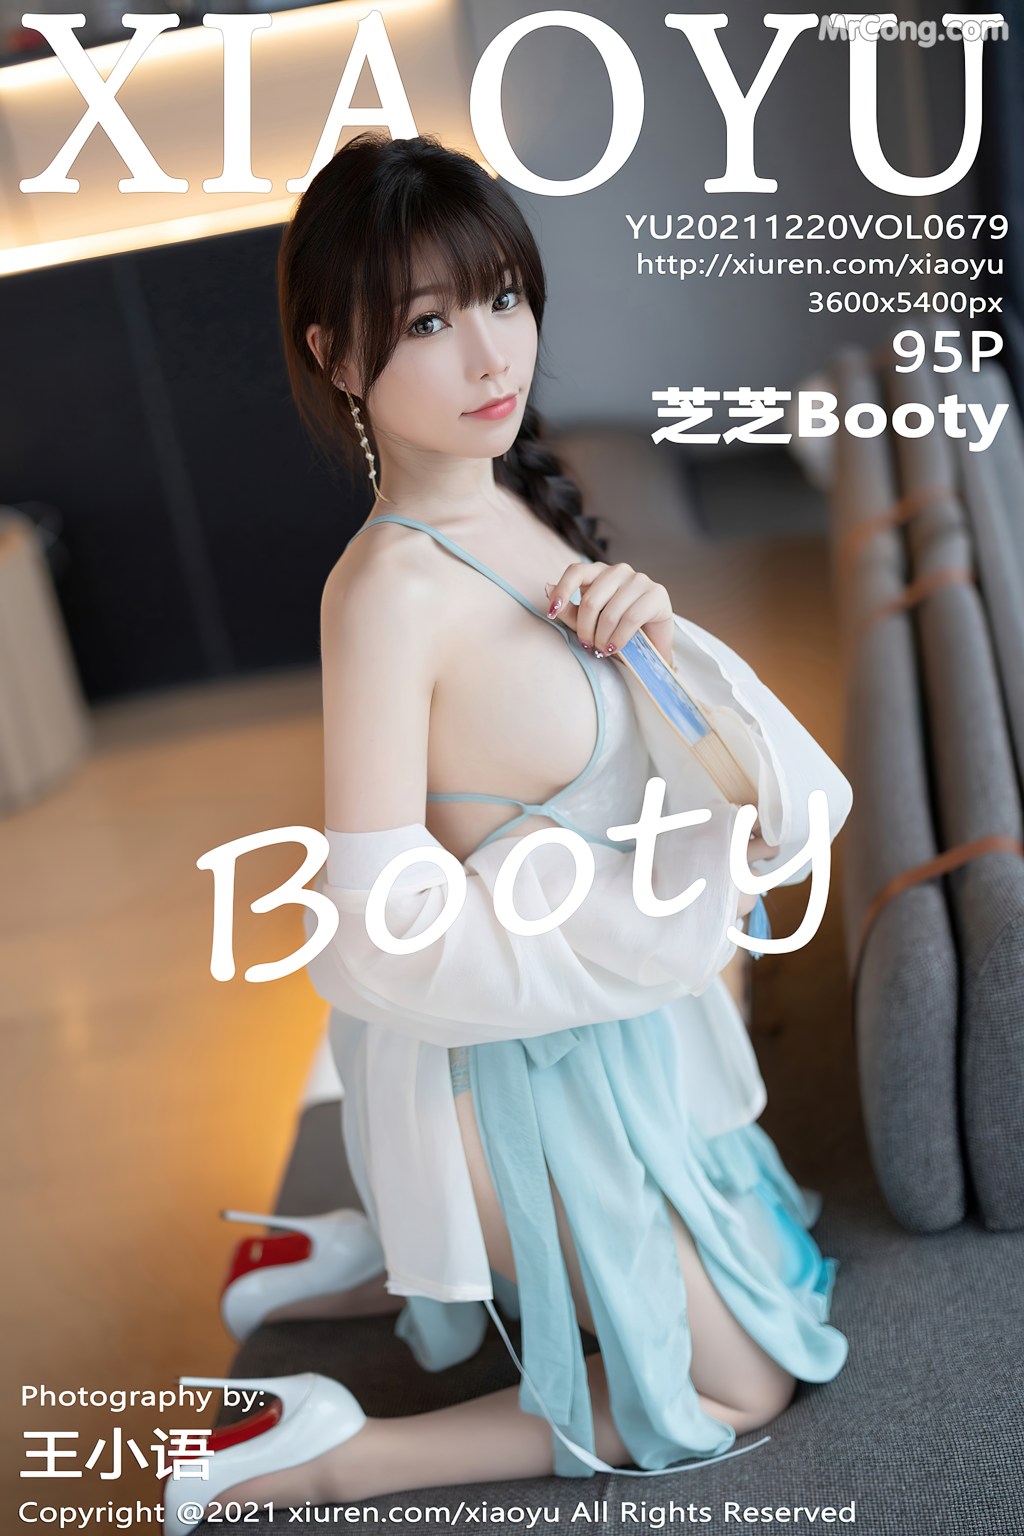 XiaoYu Vol.679: Booty (芝芝) (96 photos)